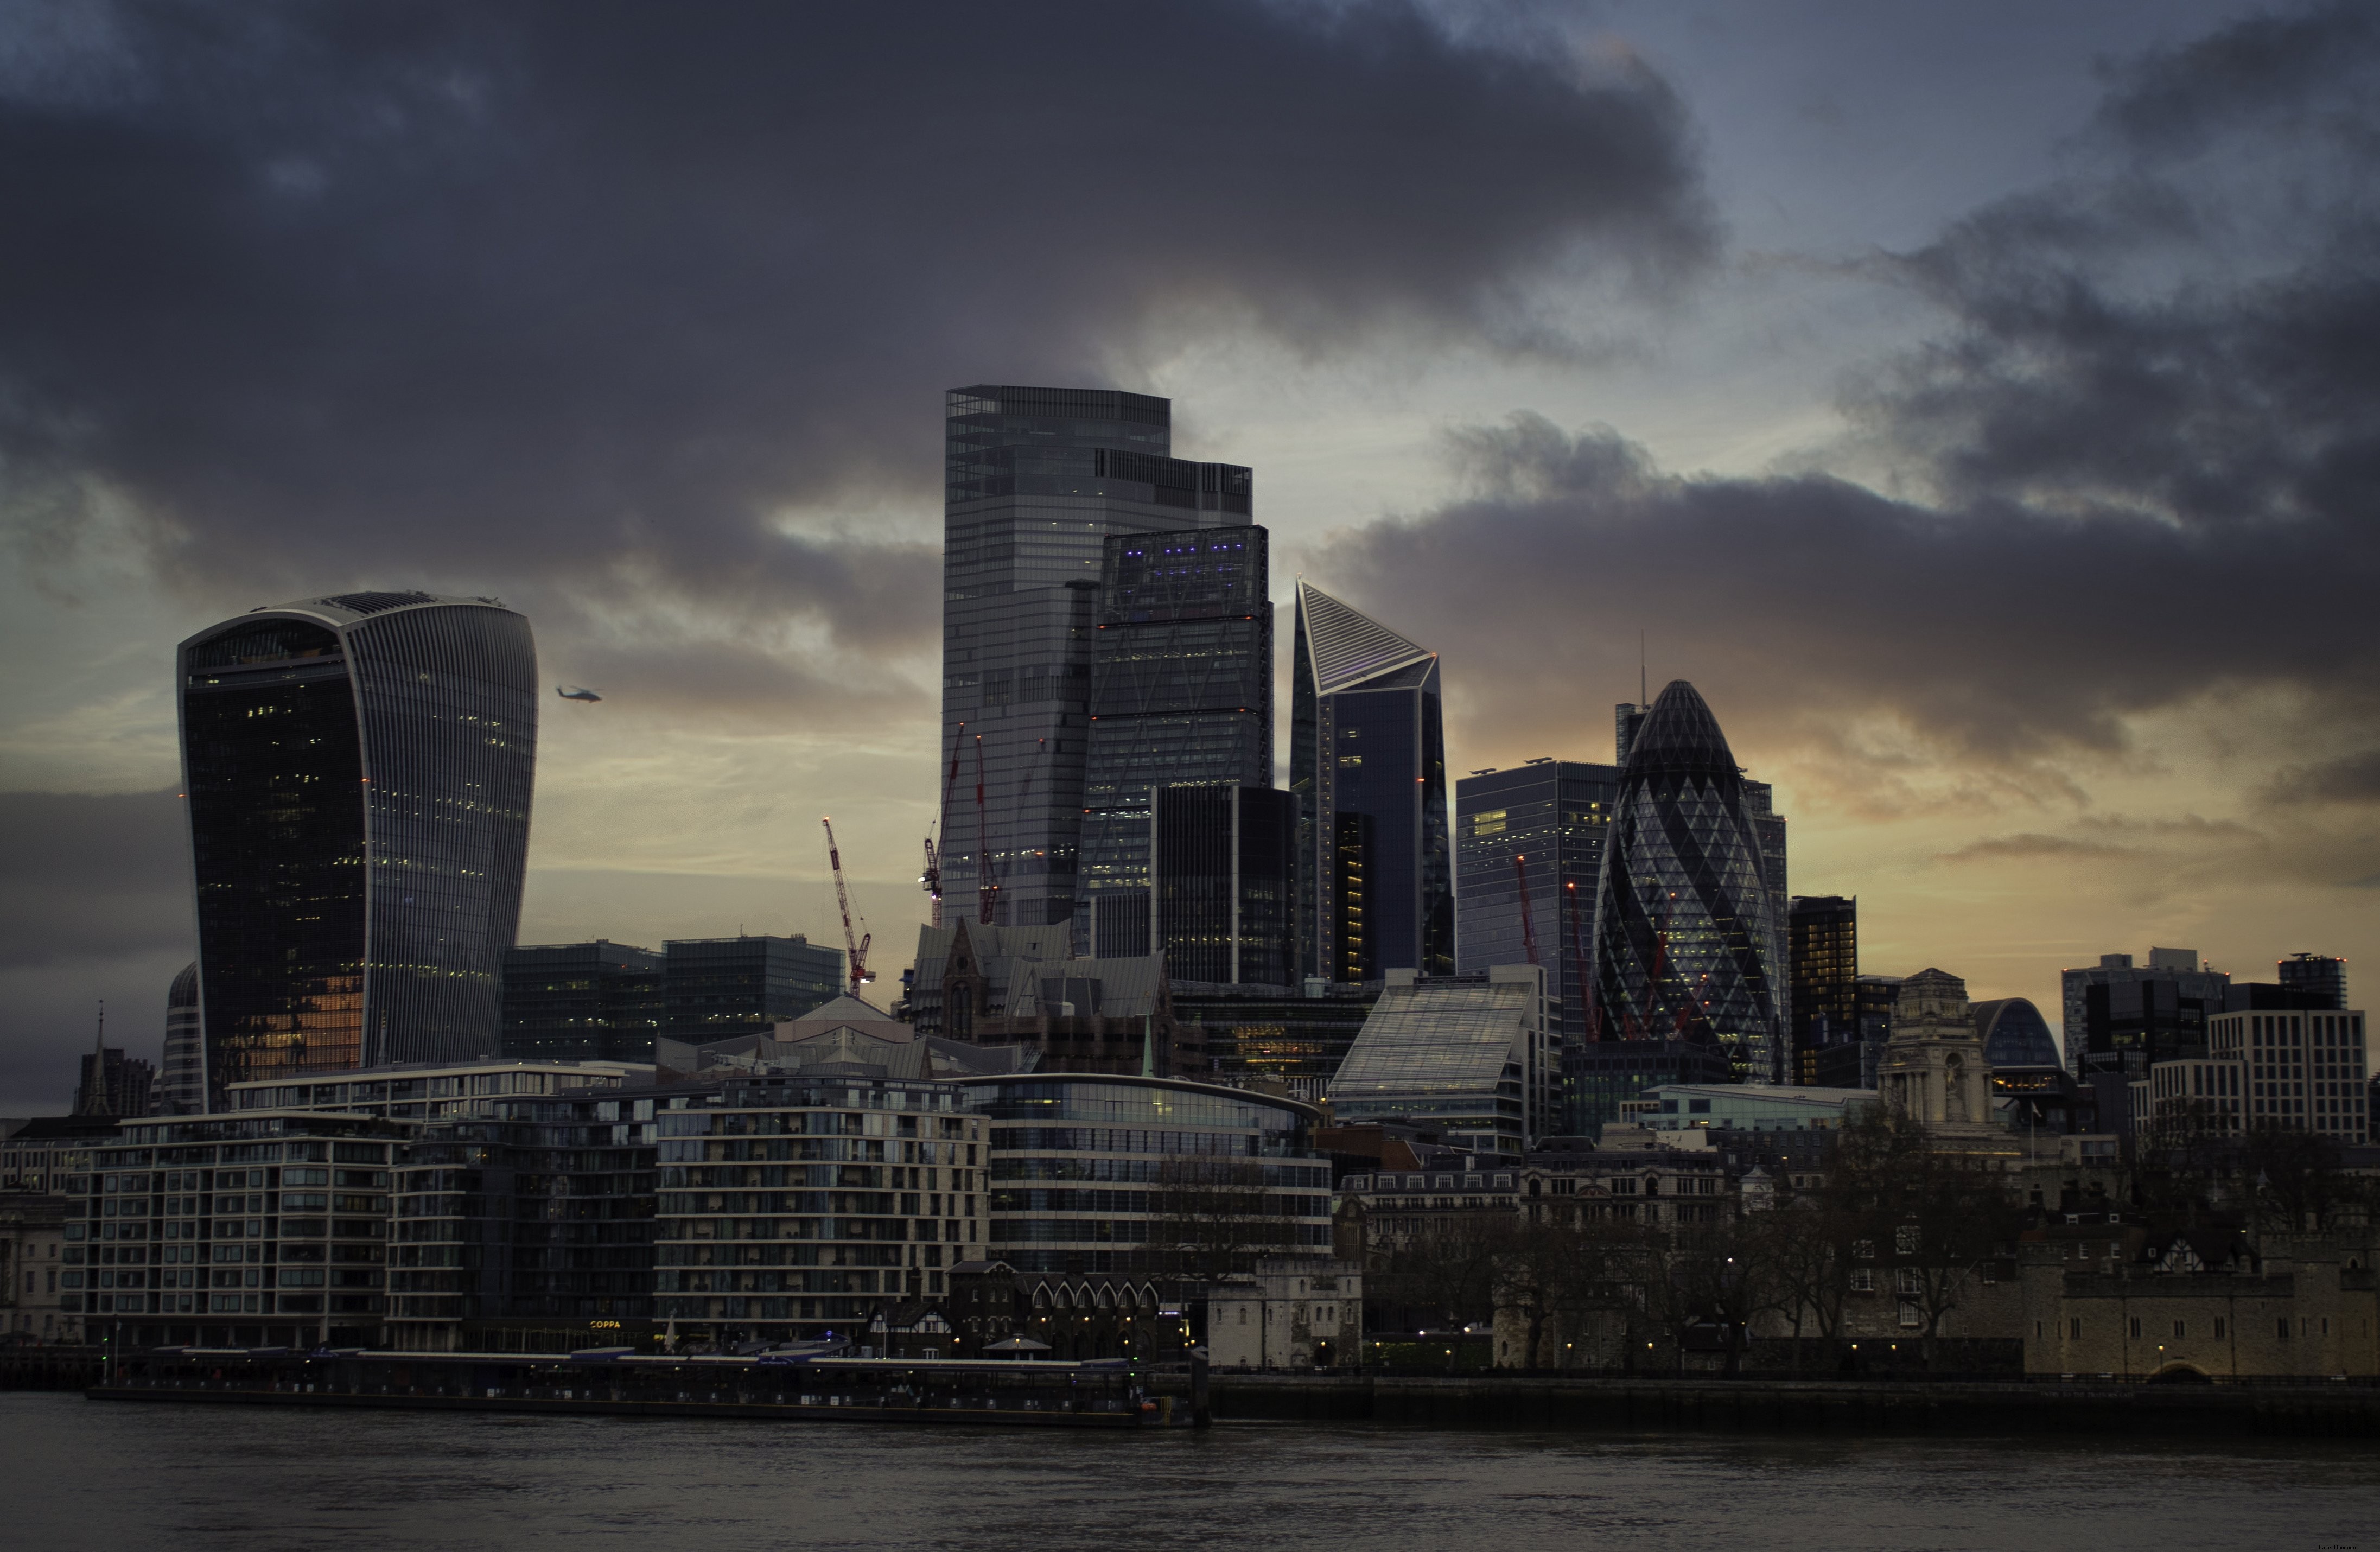 曇りの夕日の写真でロンドンの街並みの眺め 